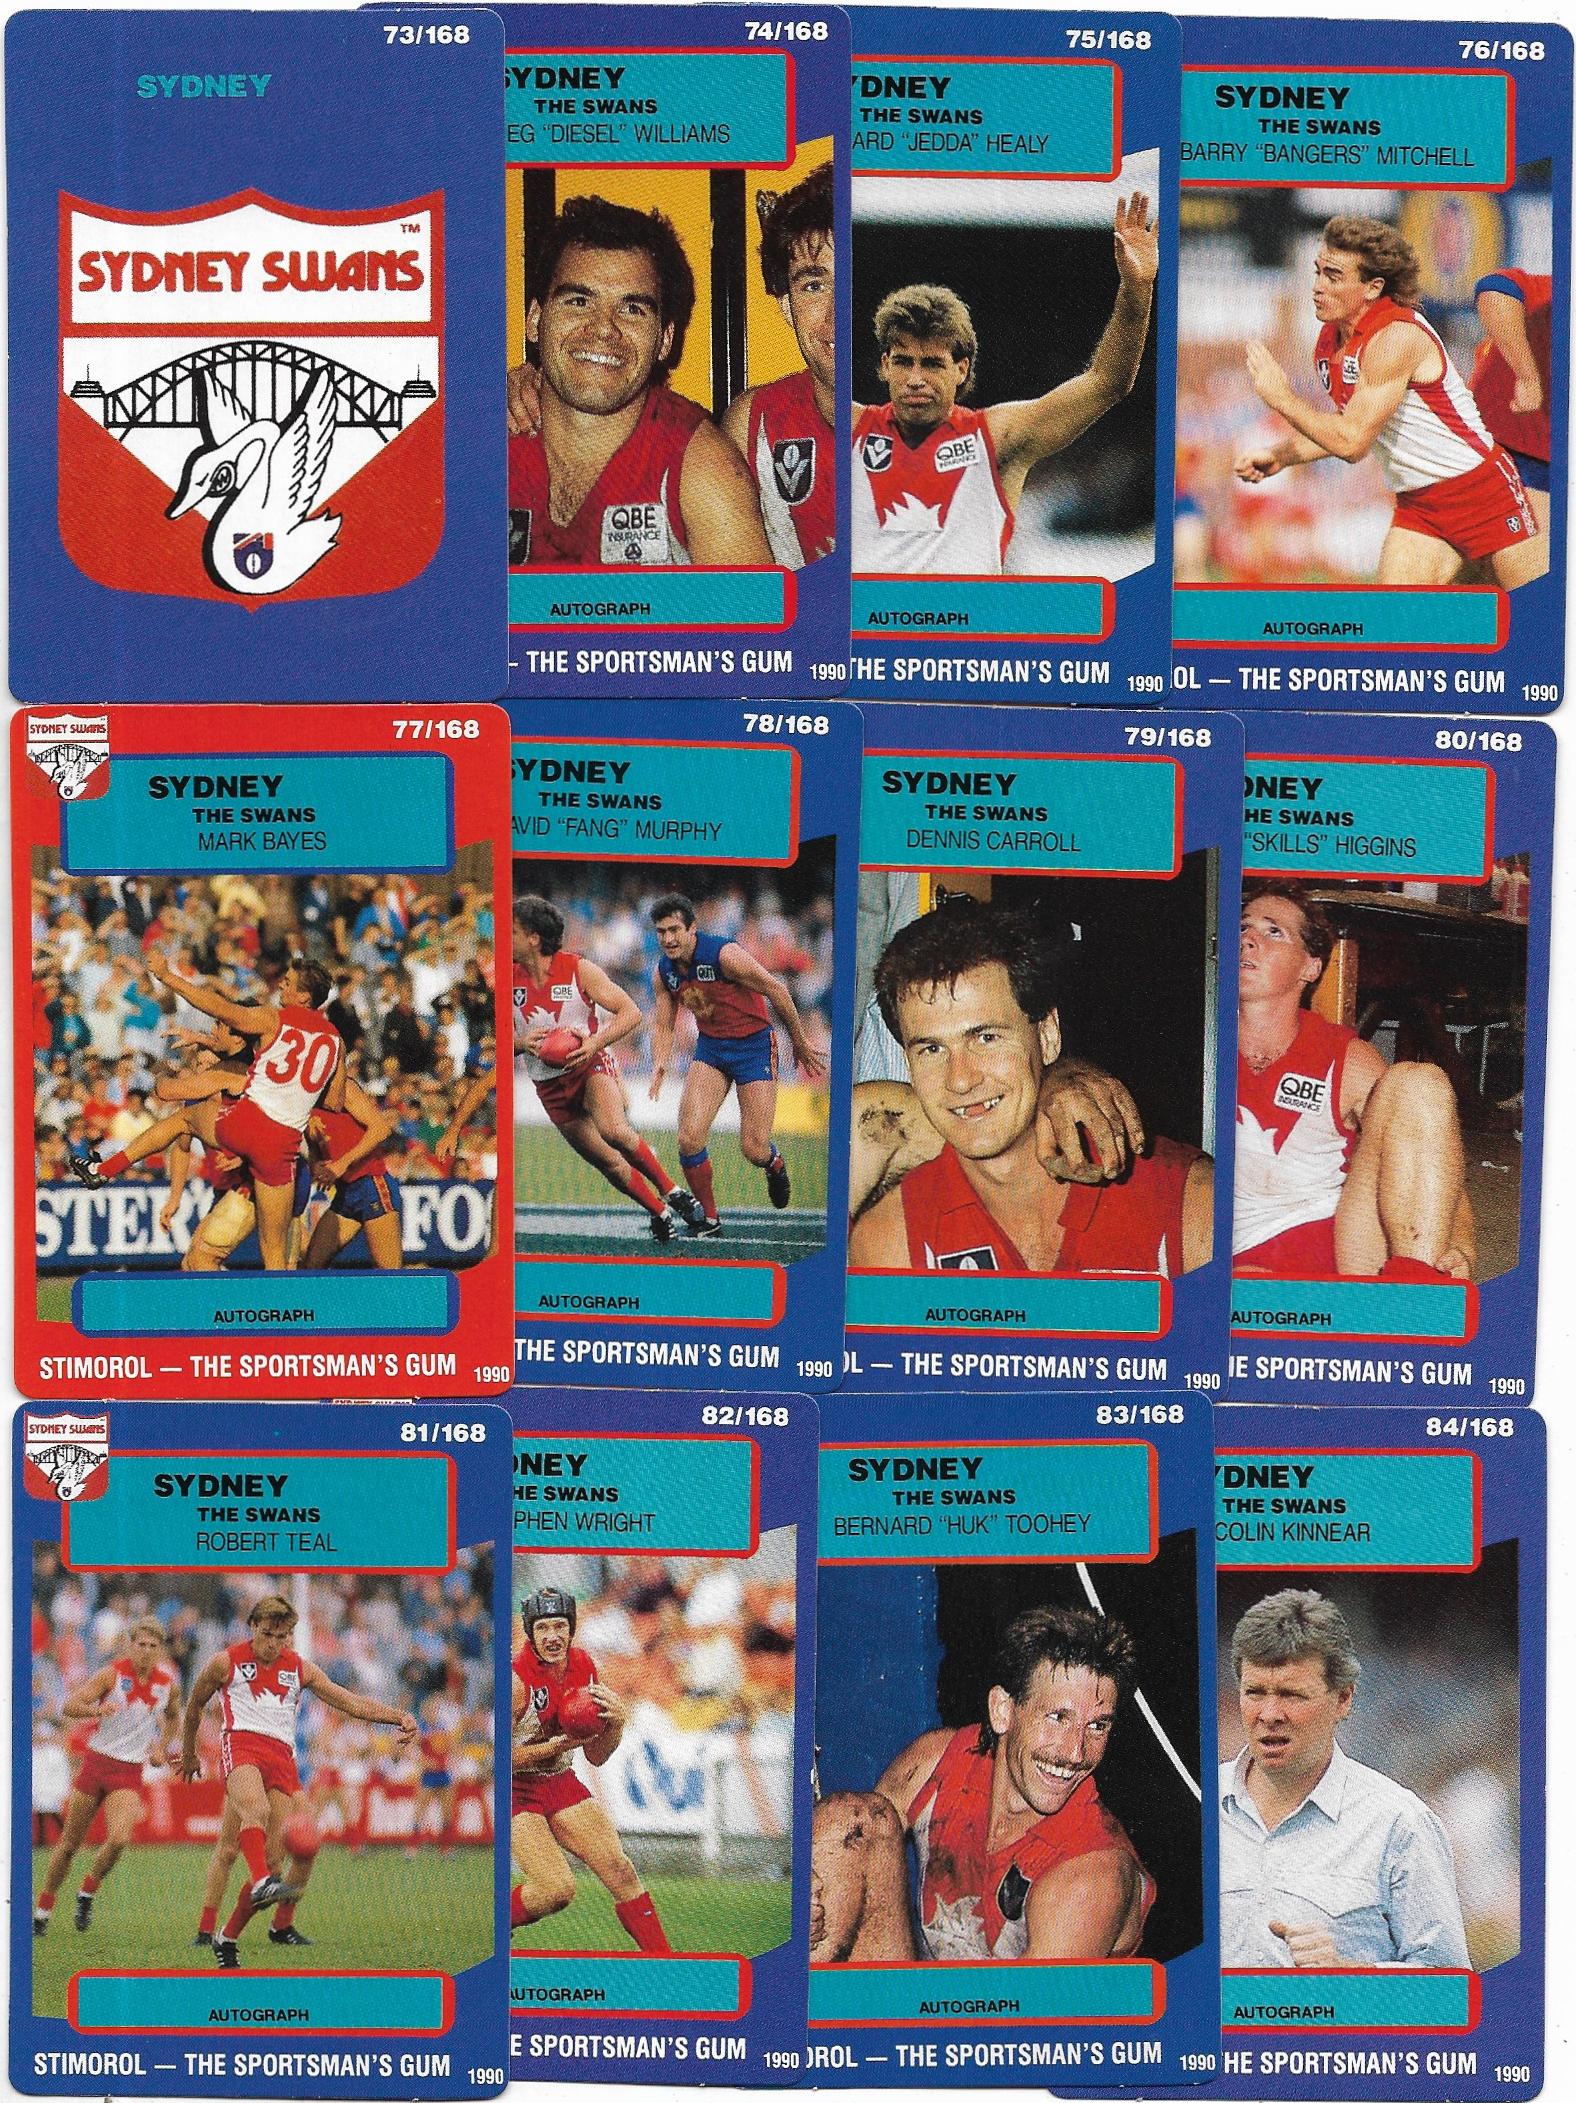 1990 Stimorol Team Set – Sydney